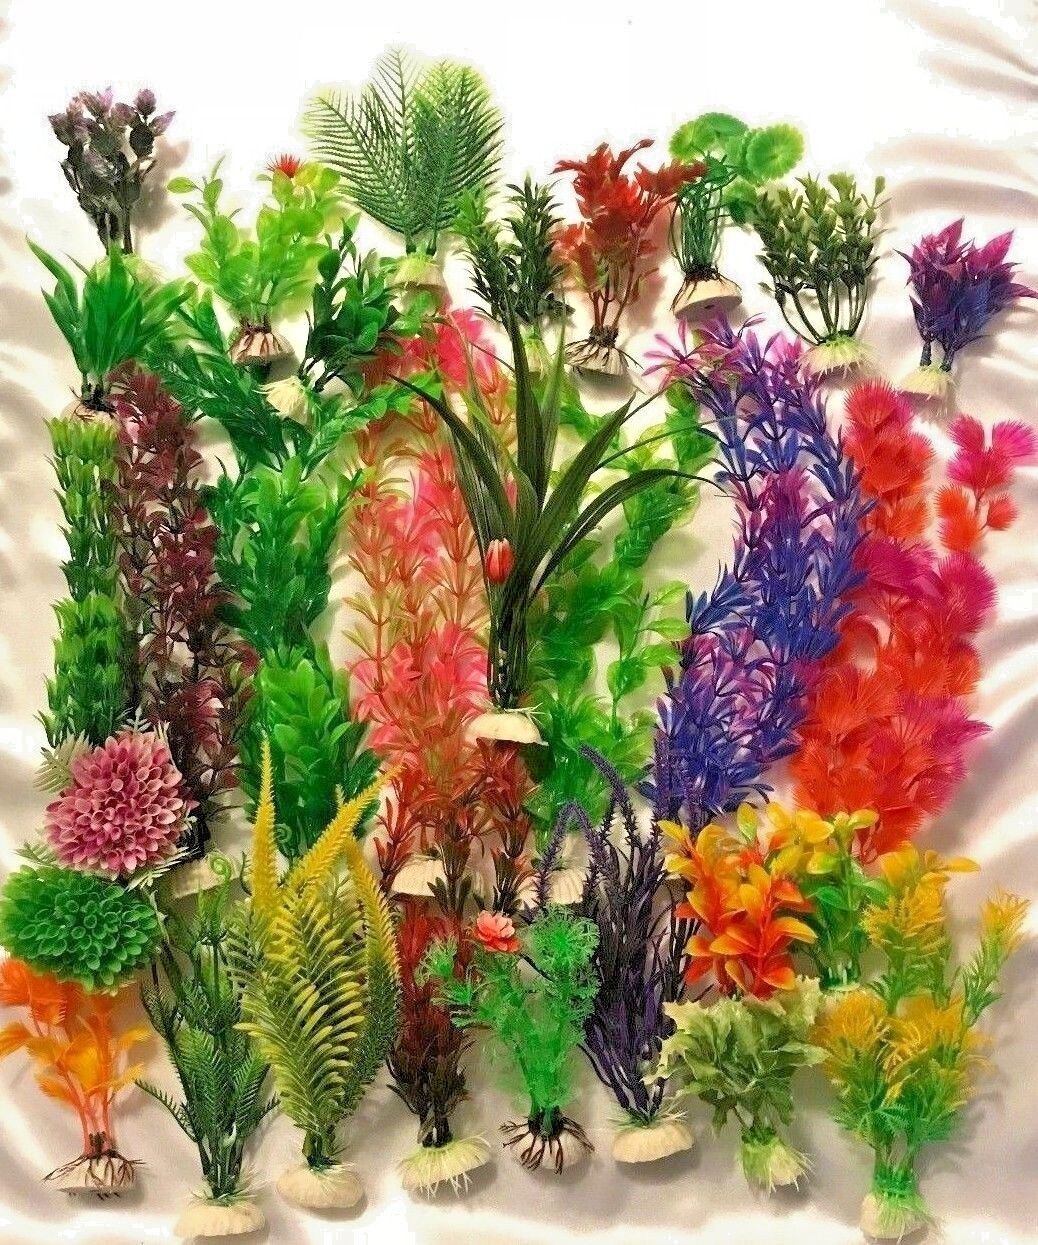 Artificial Plastic Aquarium plants - Mixed lots - Lots 5, 10, 15 plants